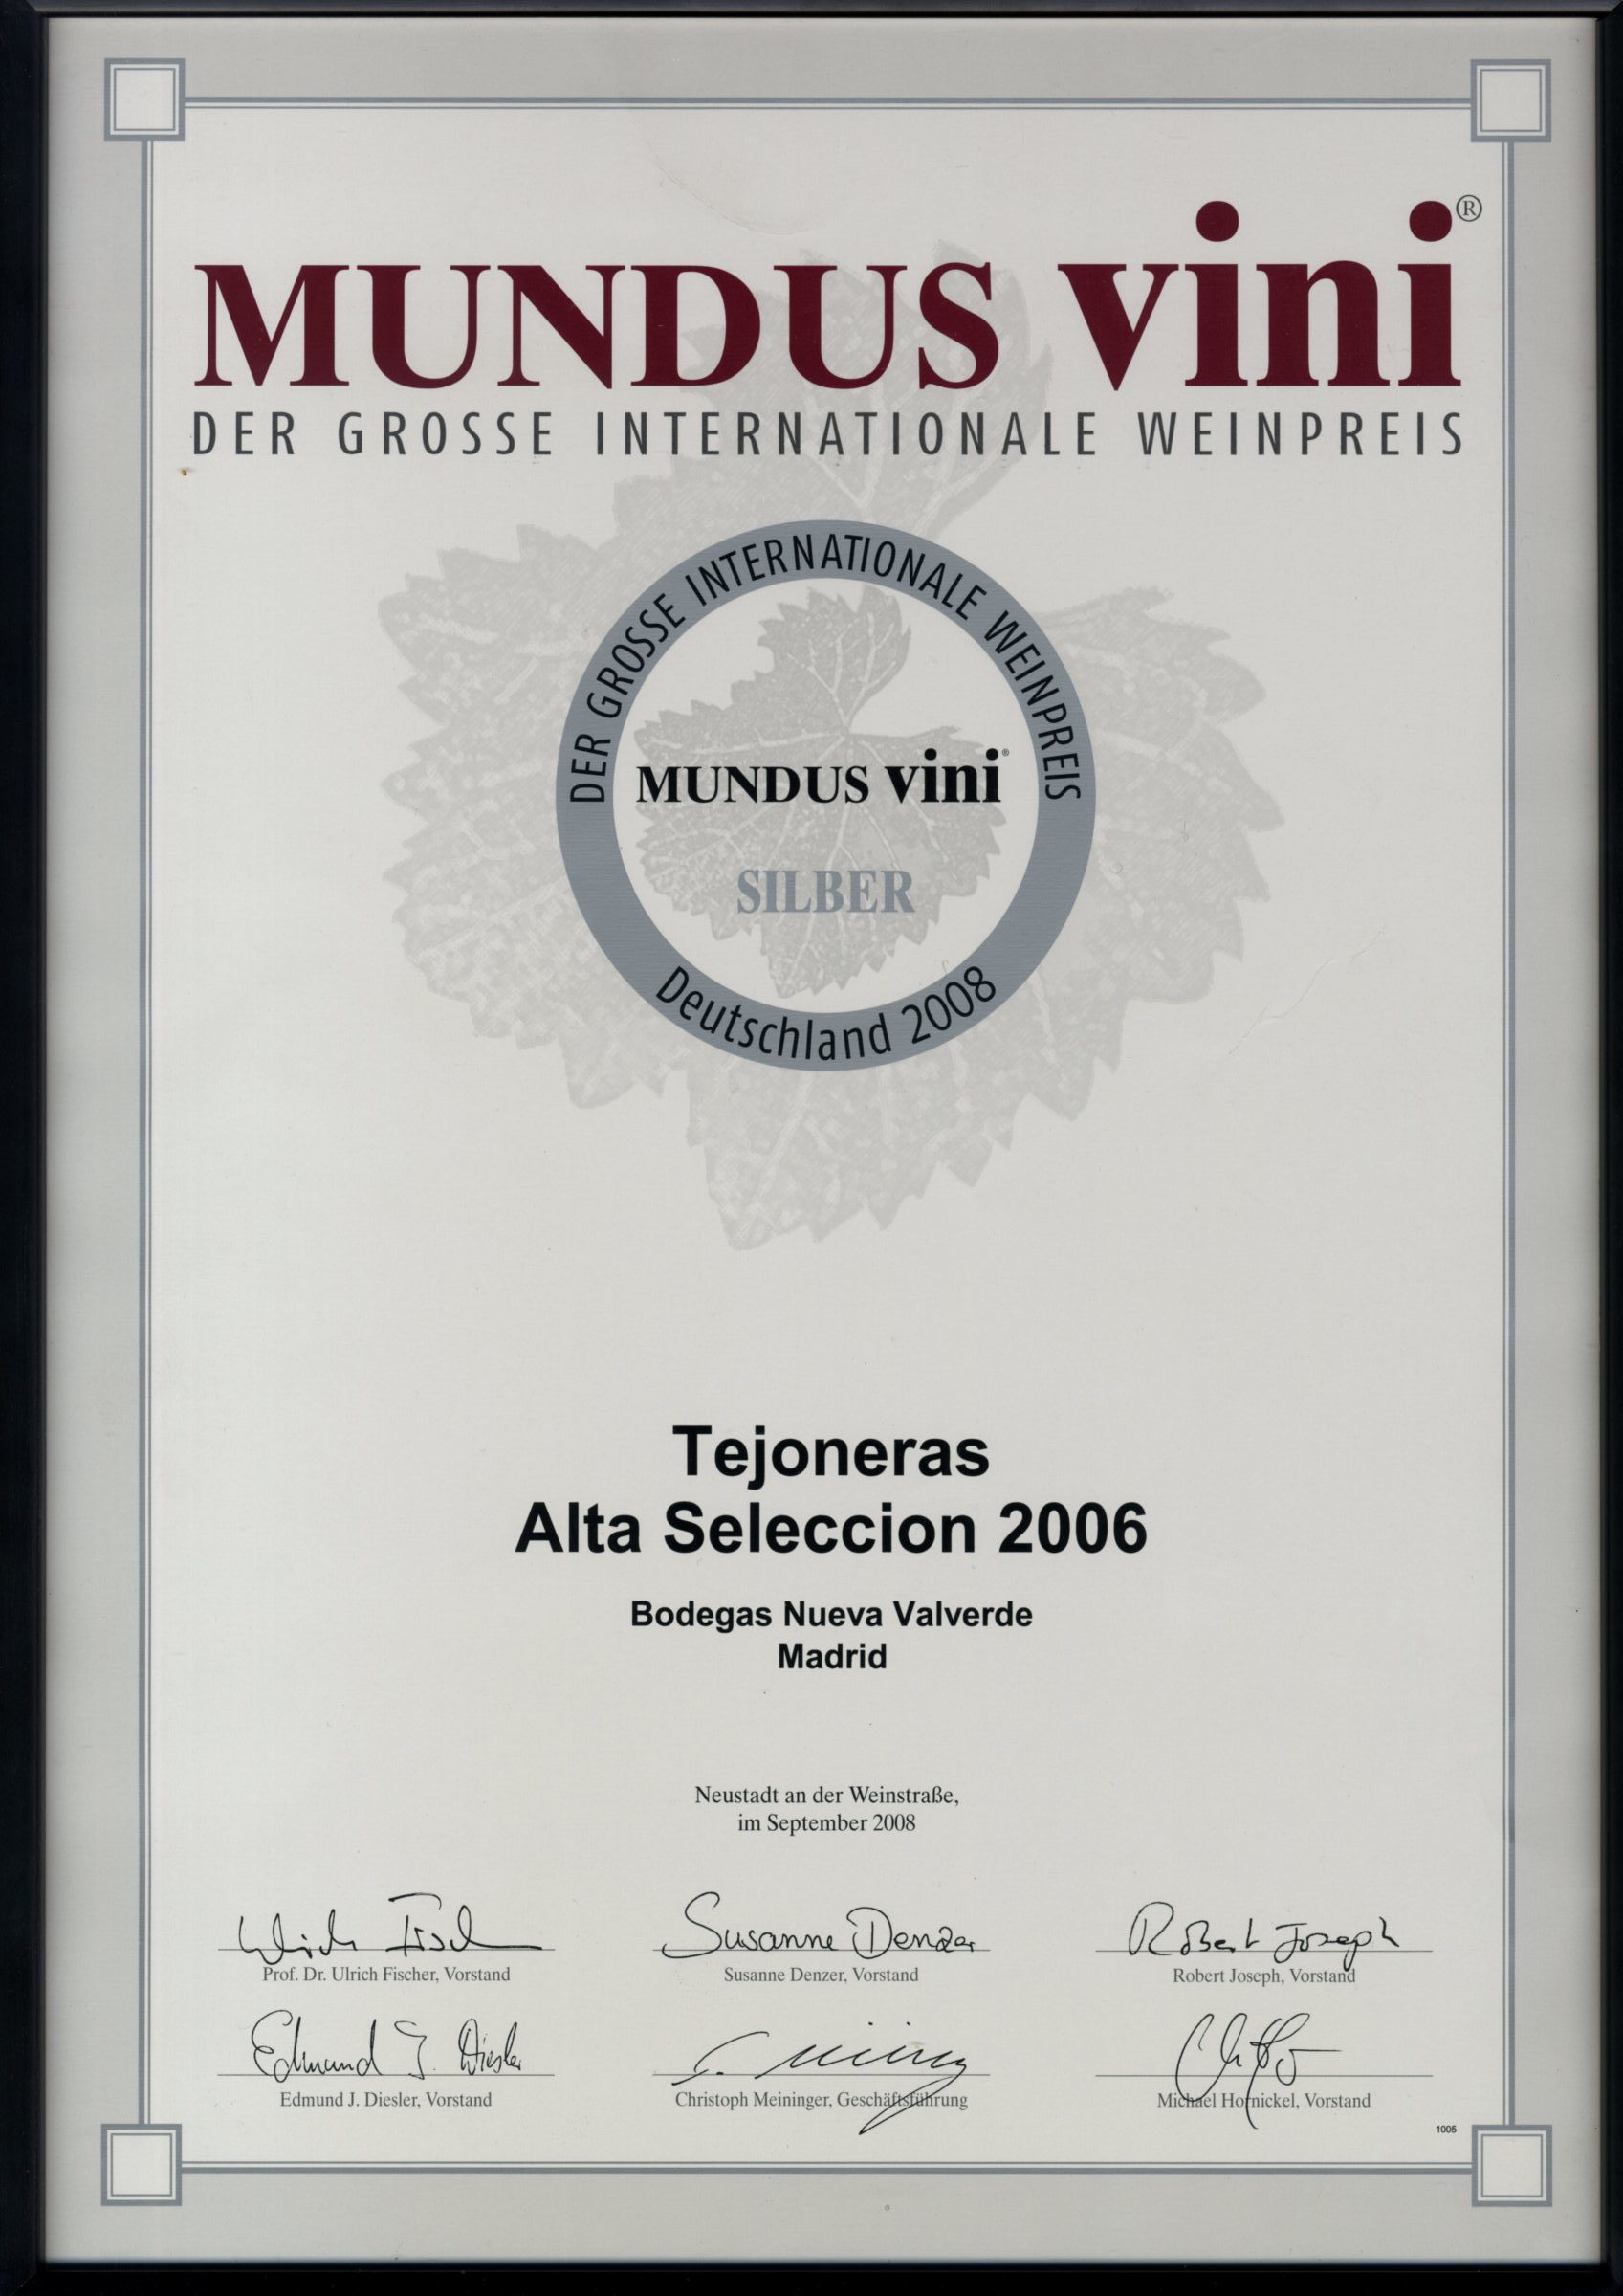 Mundus Vini 2008, Alemania. Plata. Tejoneras 2006.